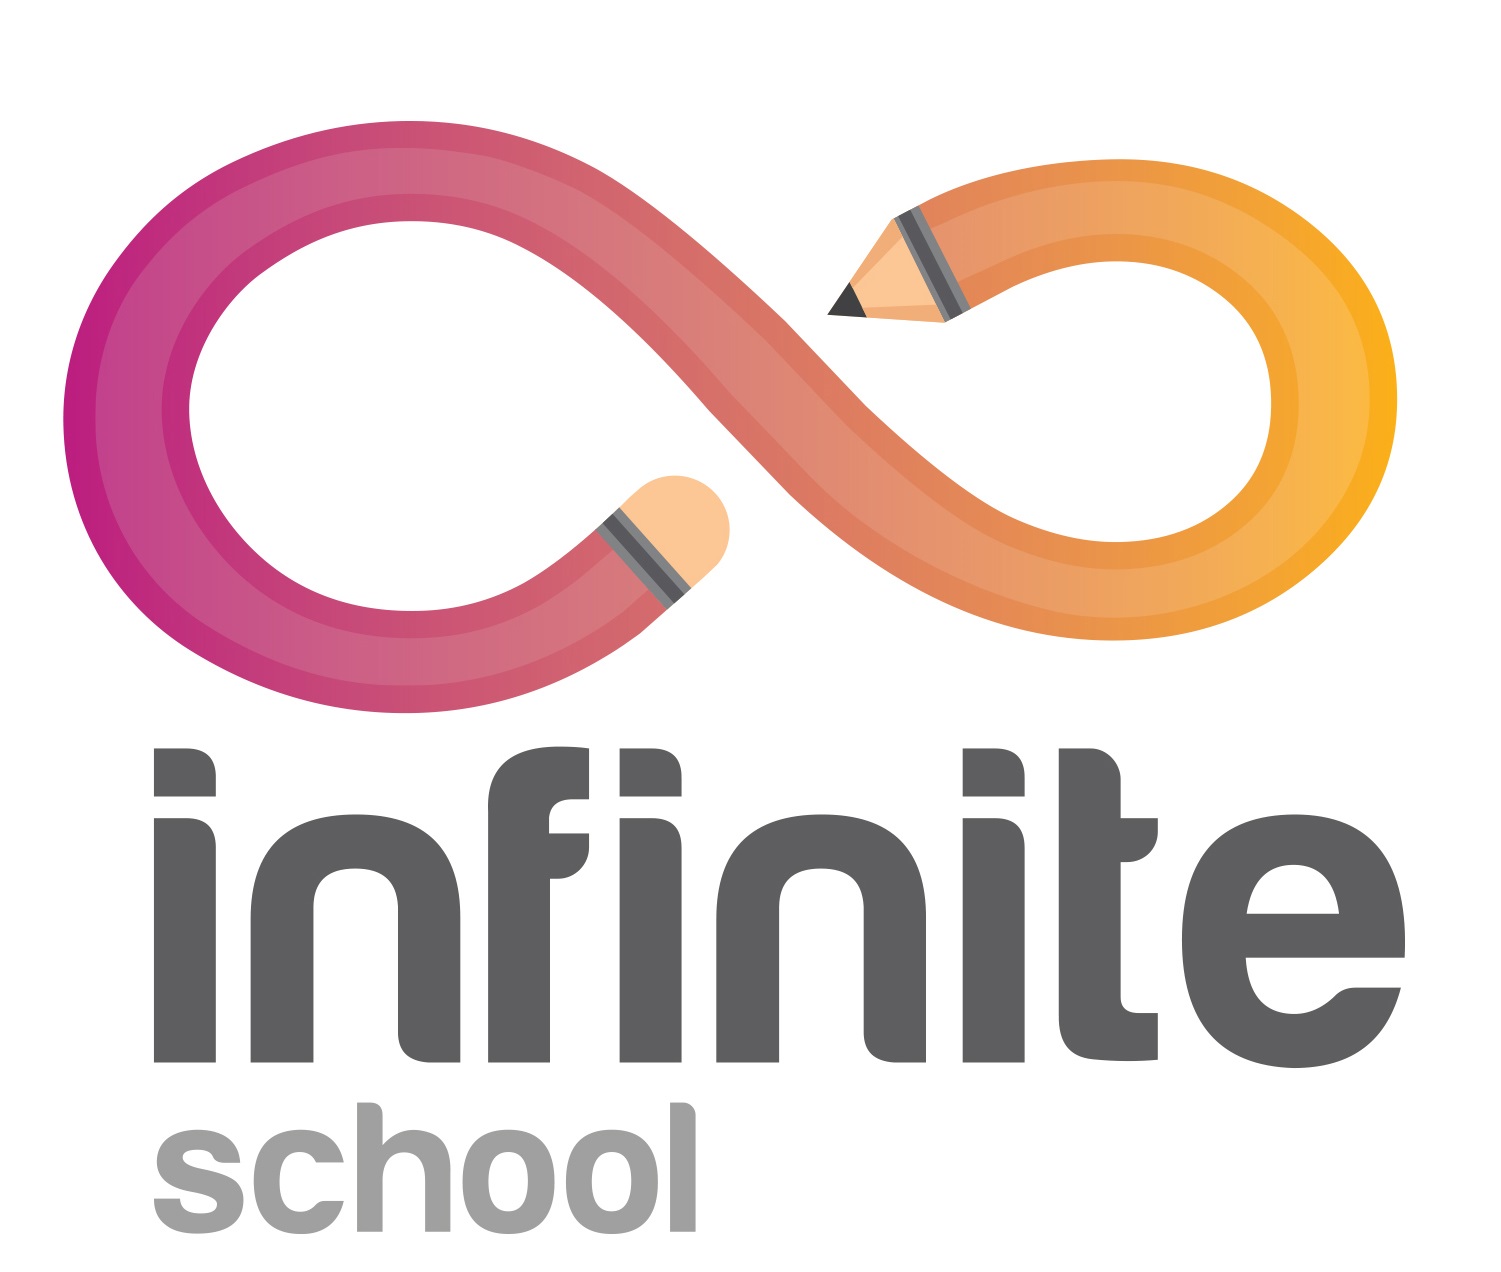 Infinite School